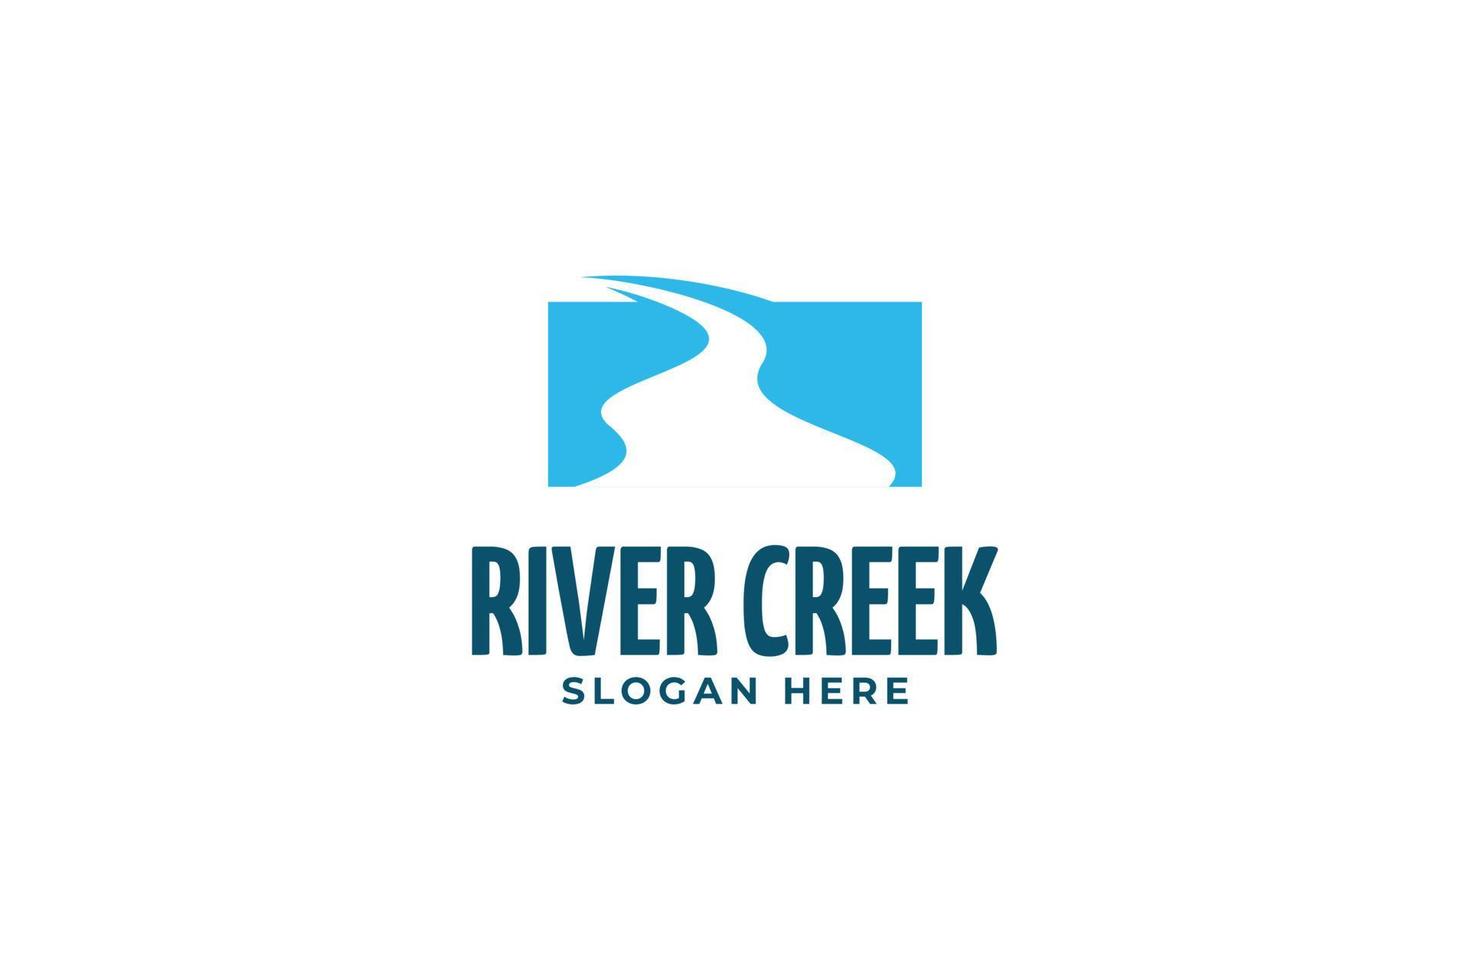 River creek logo design vector